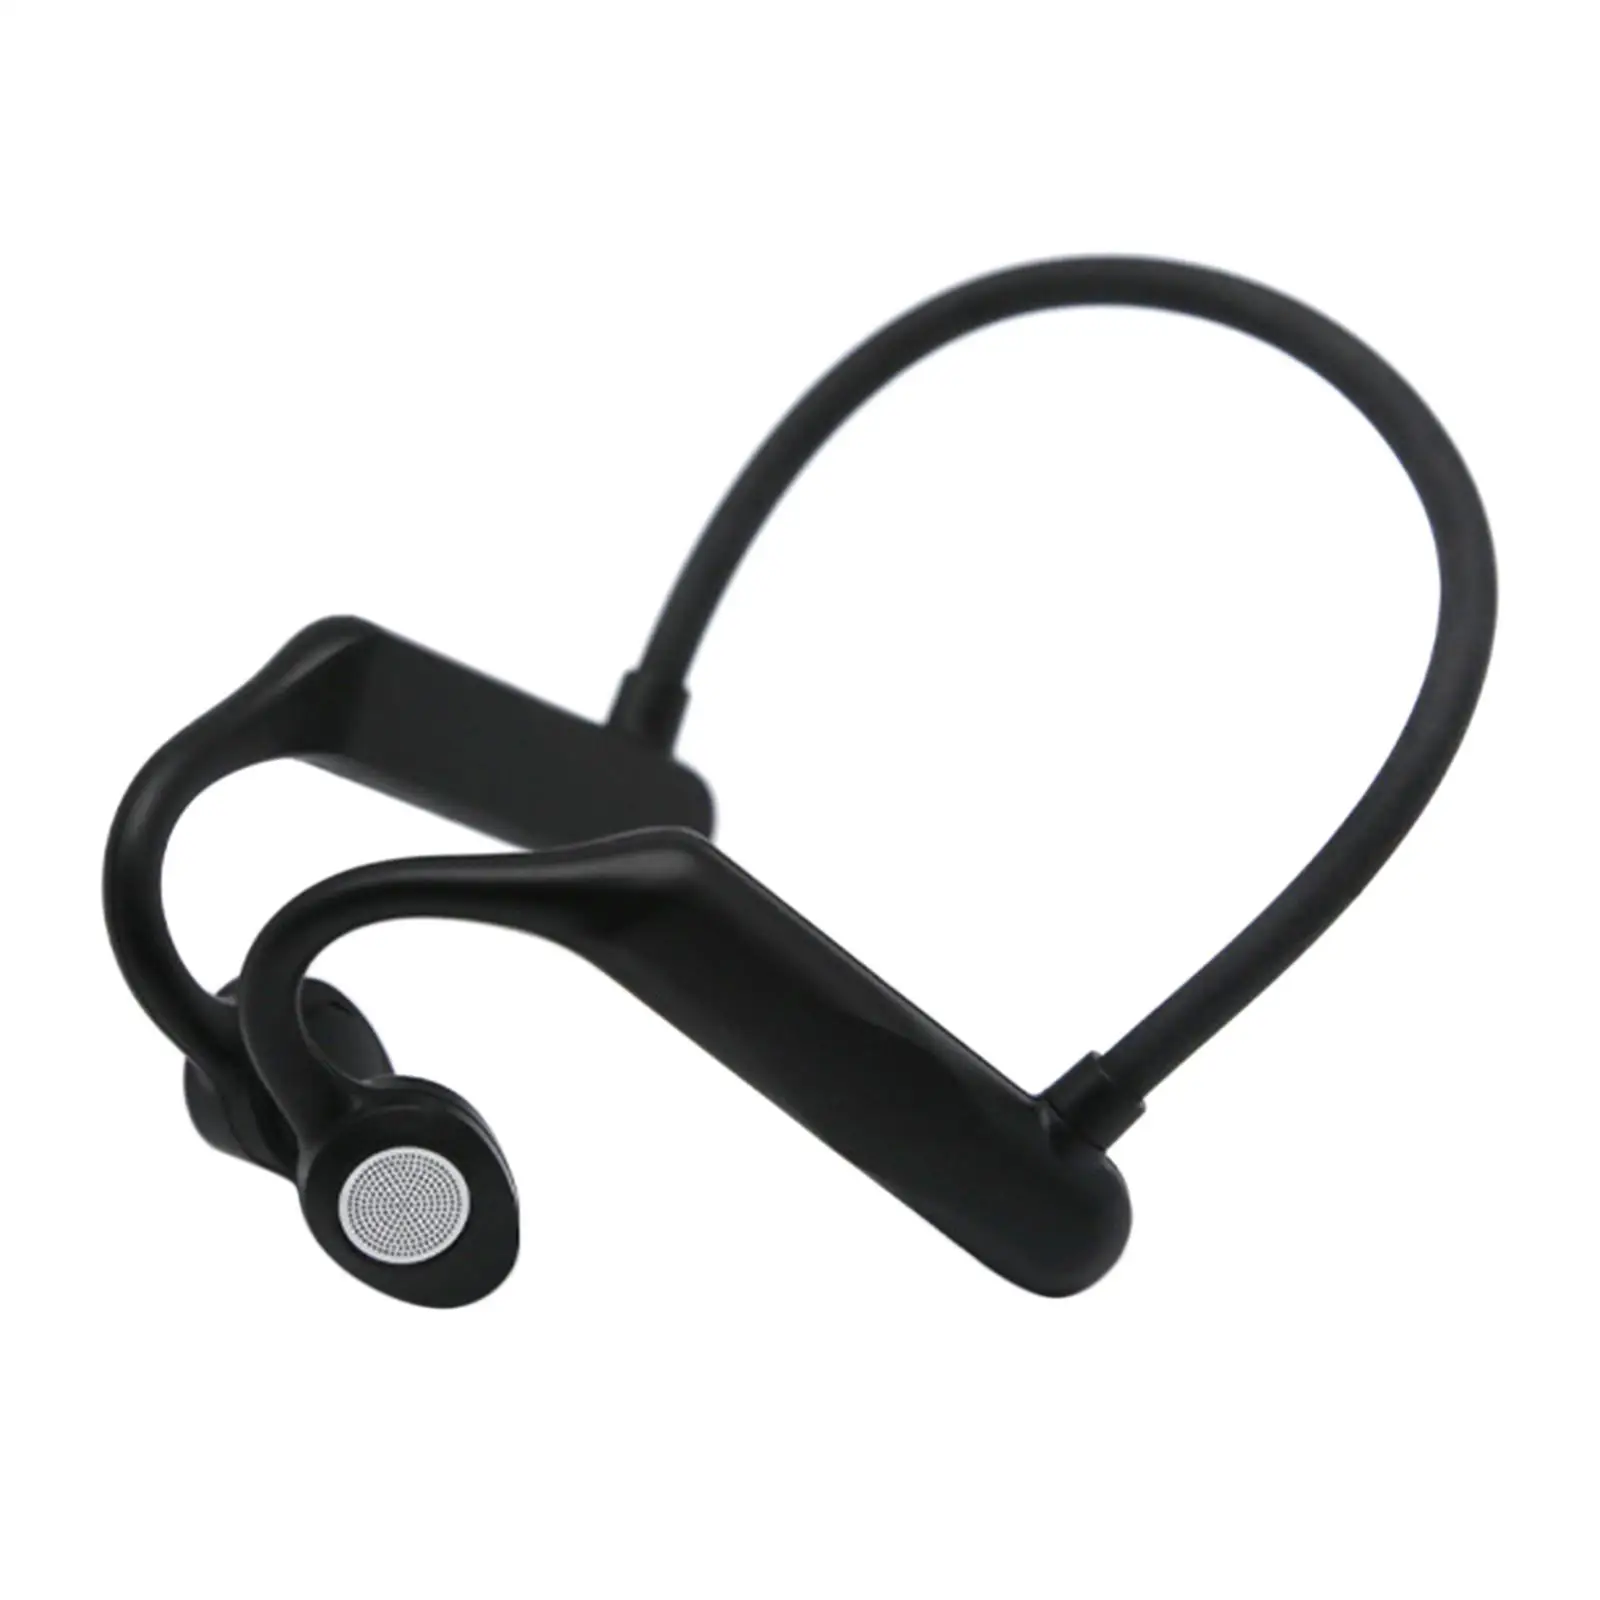 Bluetooth Sports Headset Lightweight for Running Climbing Walking Fitness